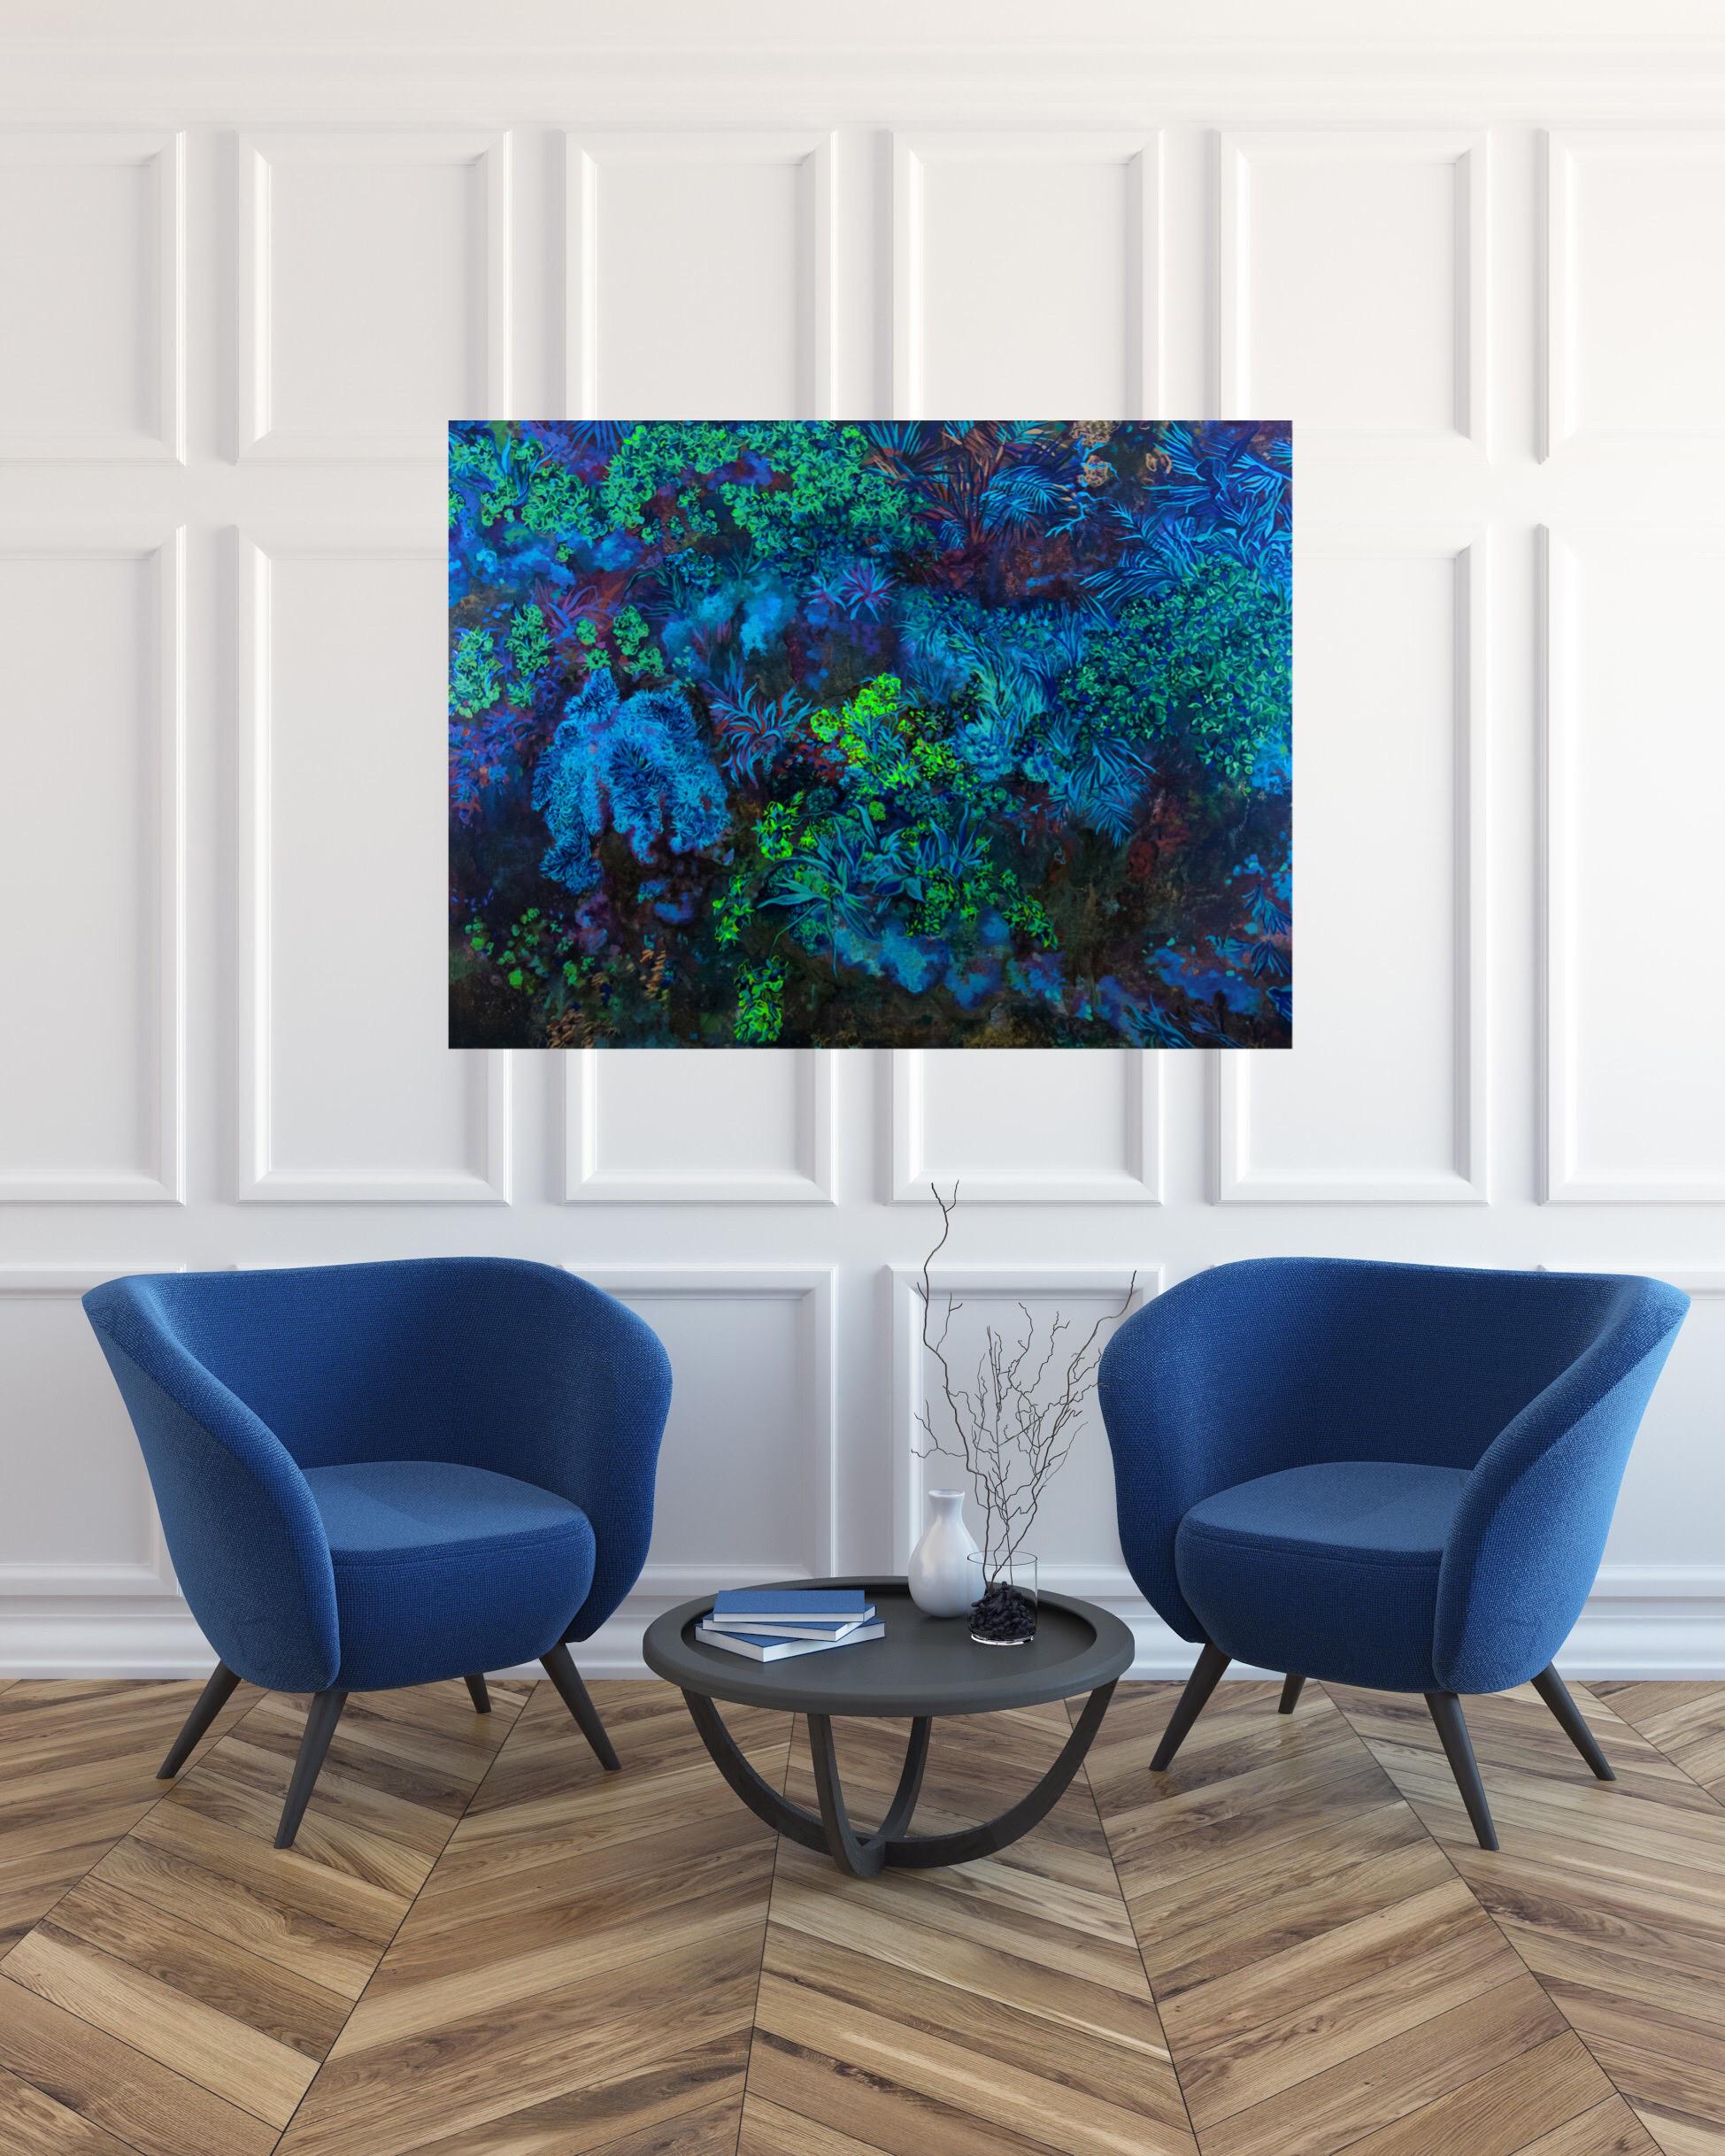 Rainfores Dusk - huile sur panneau de bois, réalisée en couleurs bleu, vert, violet - Réalisme Painting par Nikolina Kovalenko